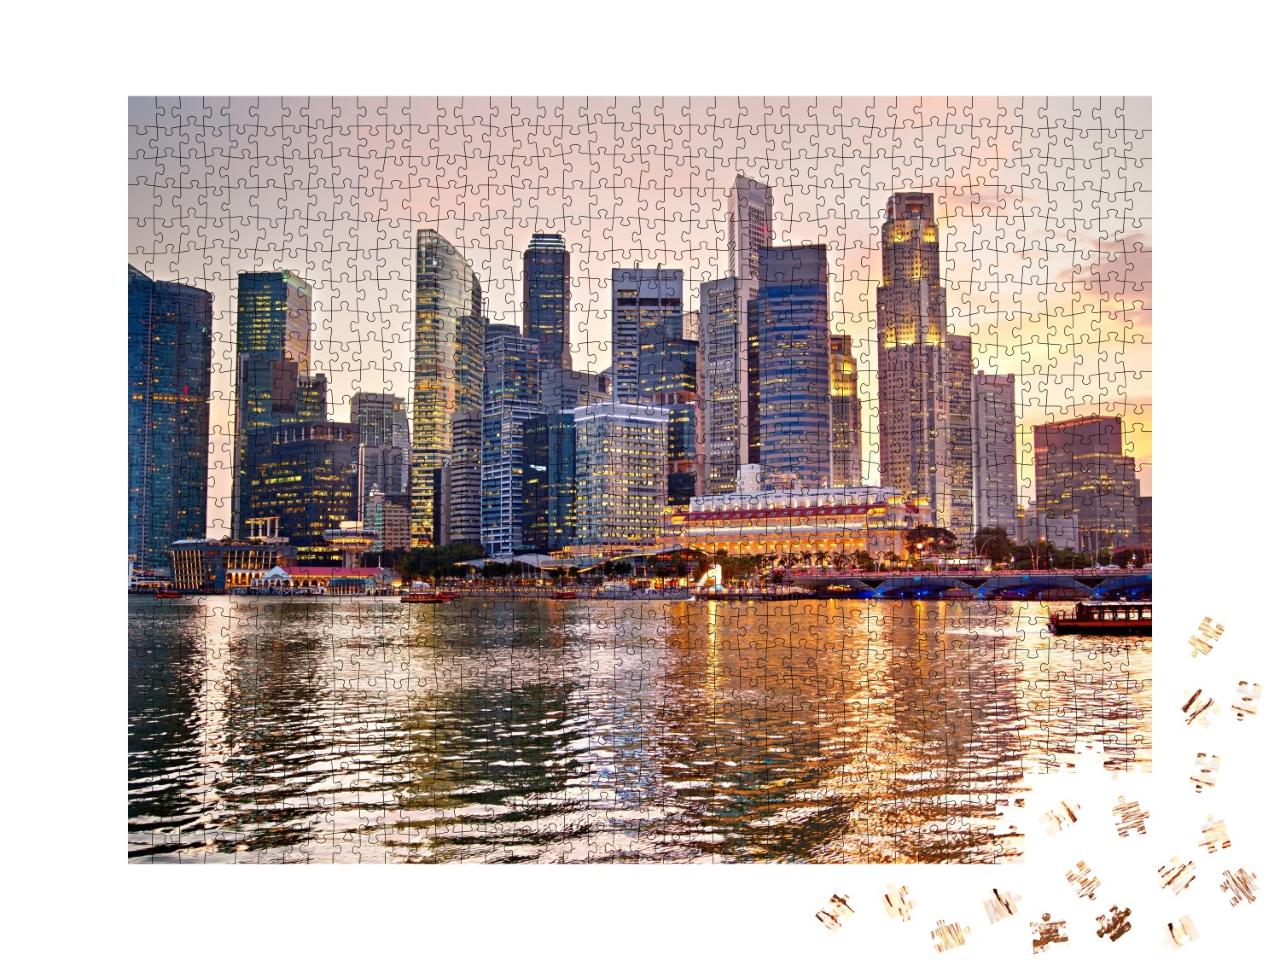 Puzzle de 1000 pièces « Skyline de Singapour au coucher du soleil »